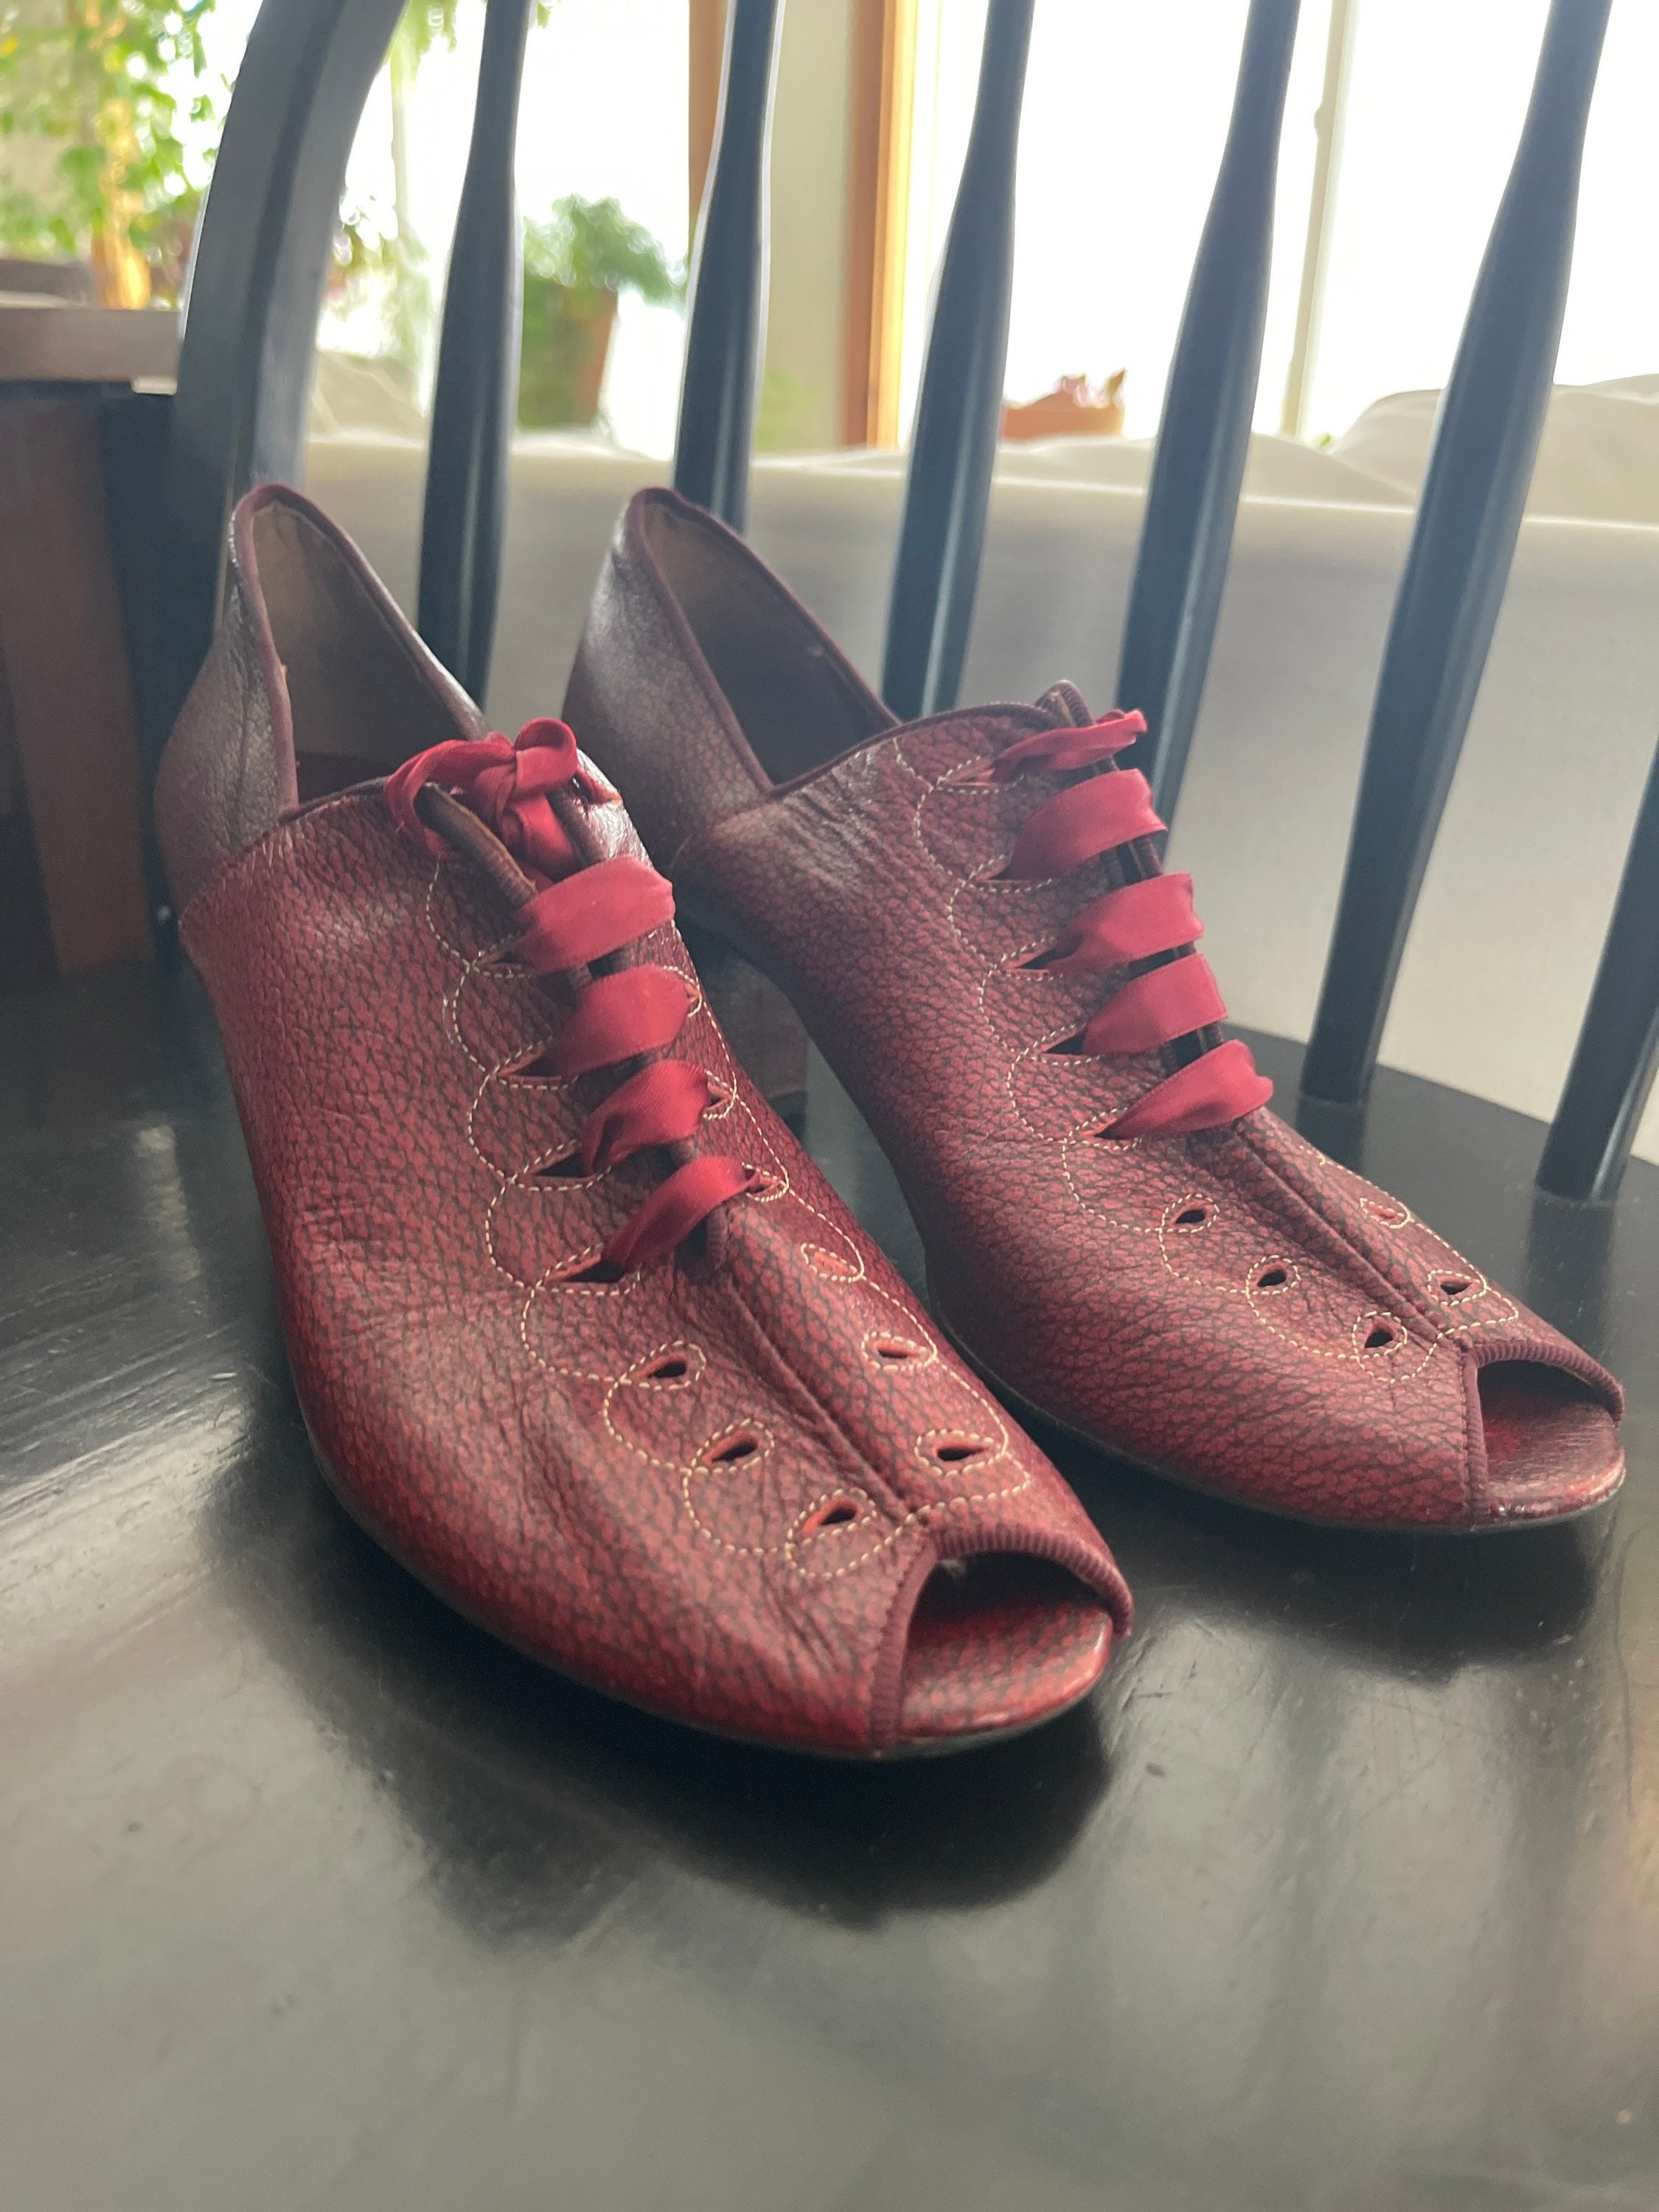 1950s – Re-Mix Vintage Shoes